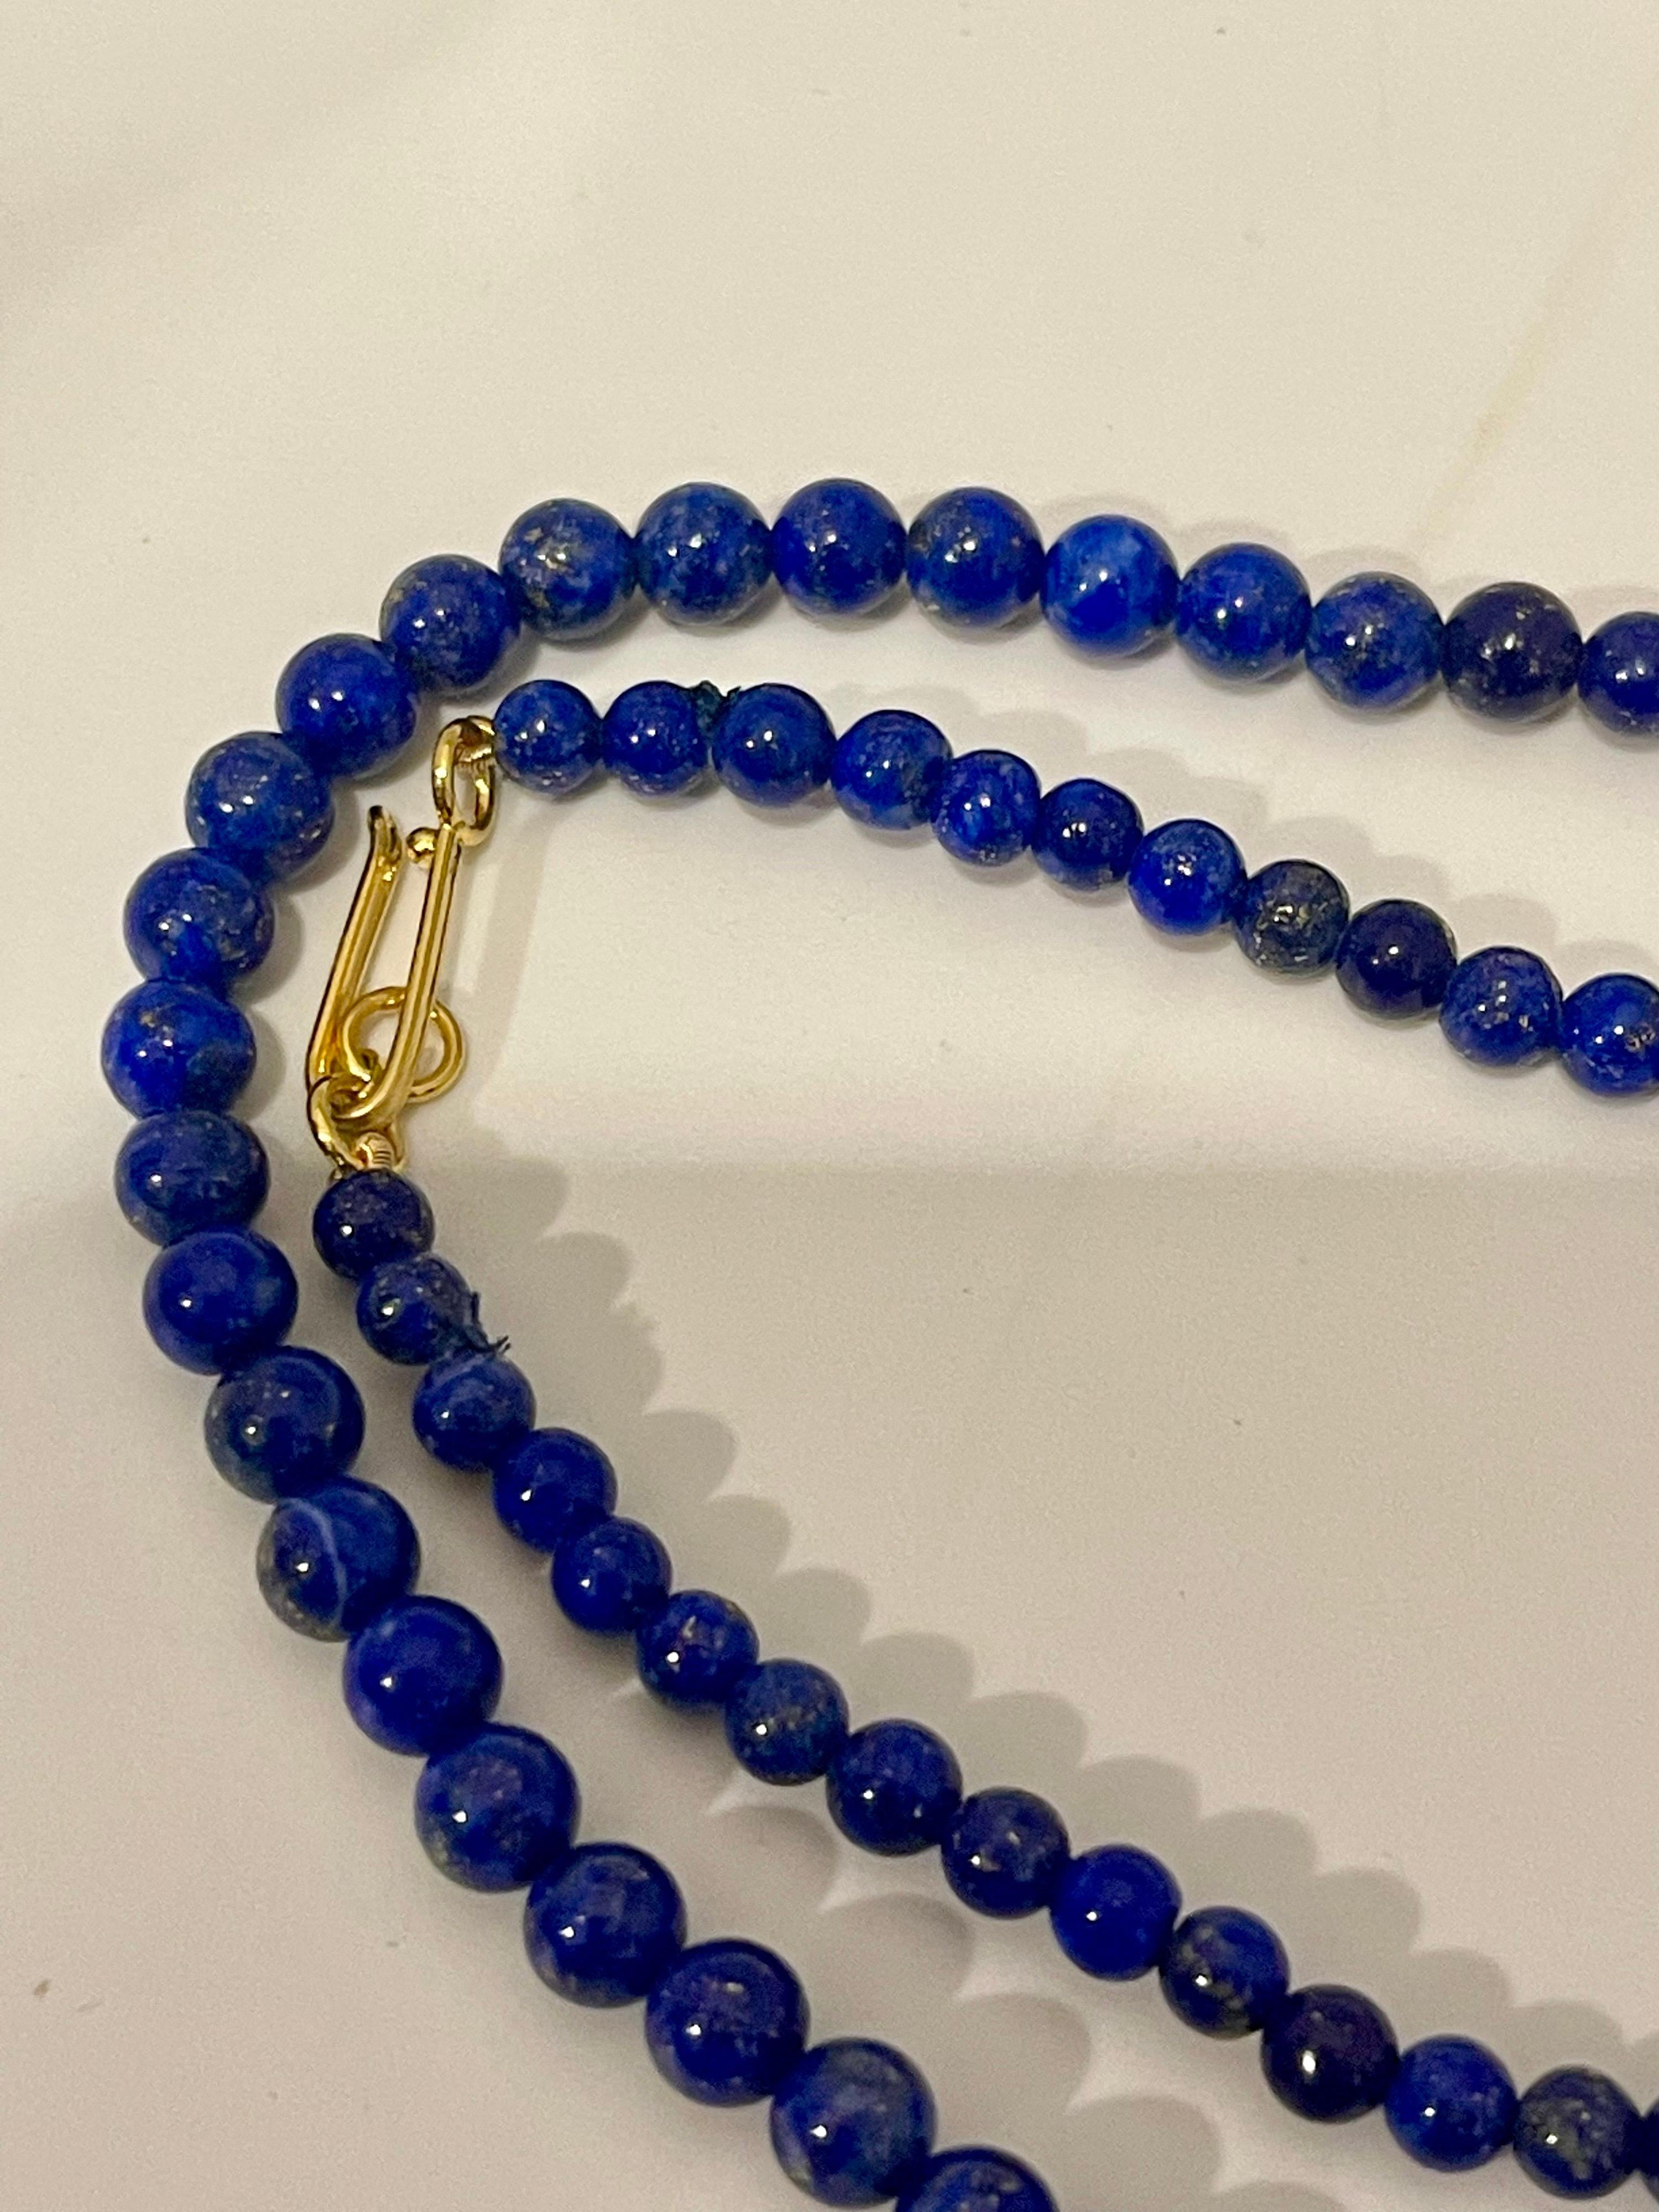 Vintage Lapislazuli Einzelstrang Halskette mit 14 Karat Gelbgold schweren Gelbgold Haken Verschluss
Diese wunderbare Vintage Lapis Lazuli Graduierung Halskette verfügt über 1 Reihe von üppigen Perlen
etwa 5 bis 6 mm große Perlen
Strang ist 20 Zoll